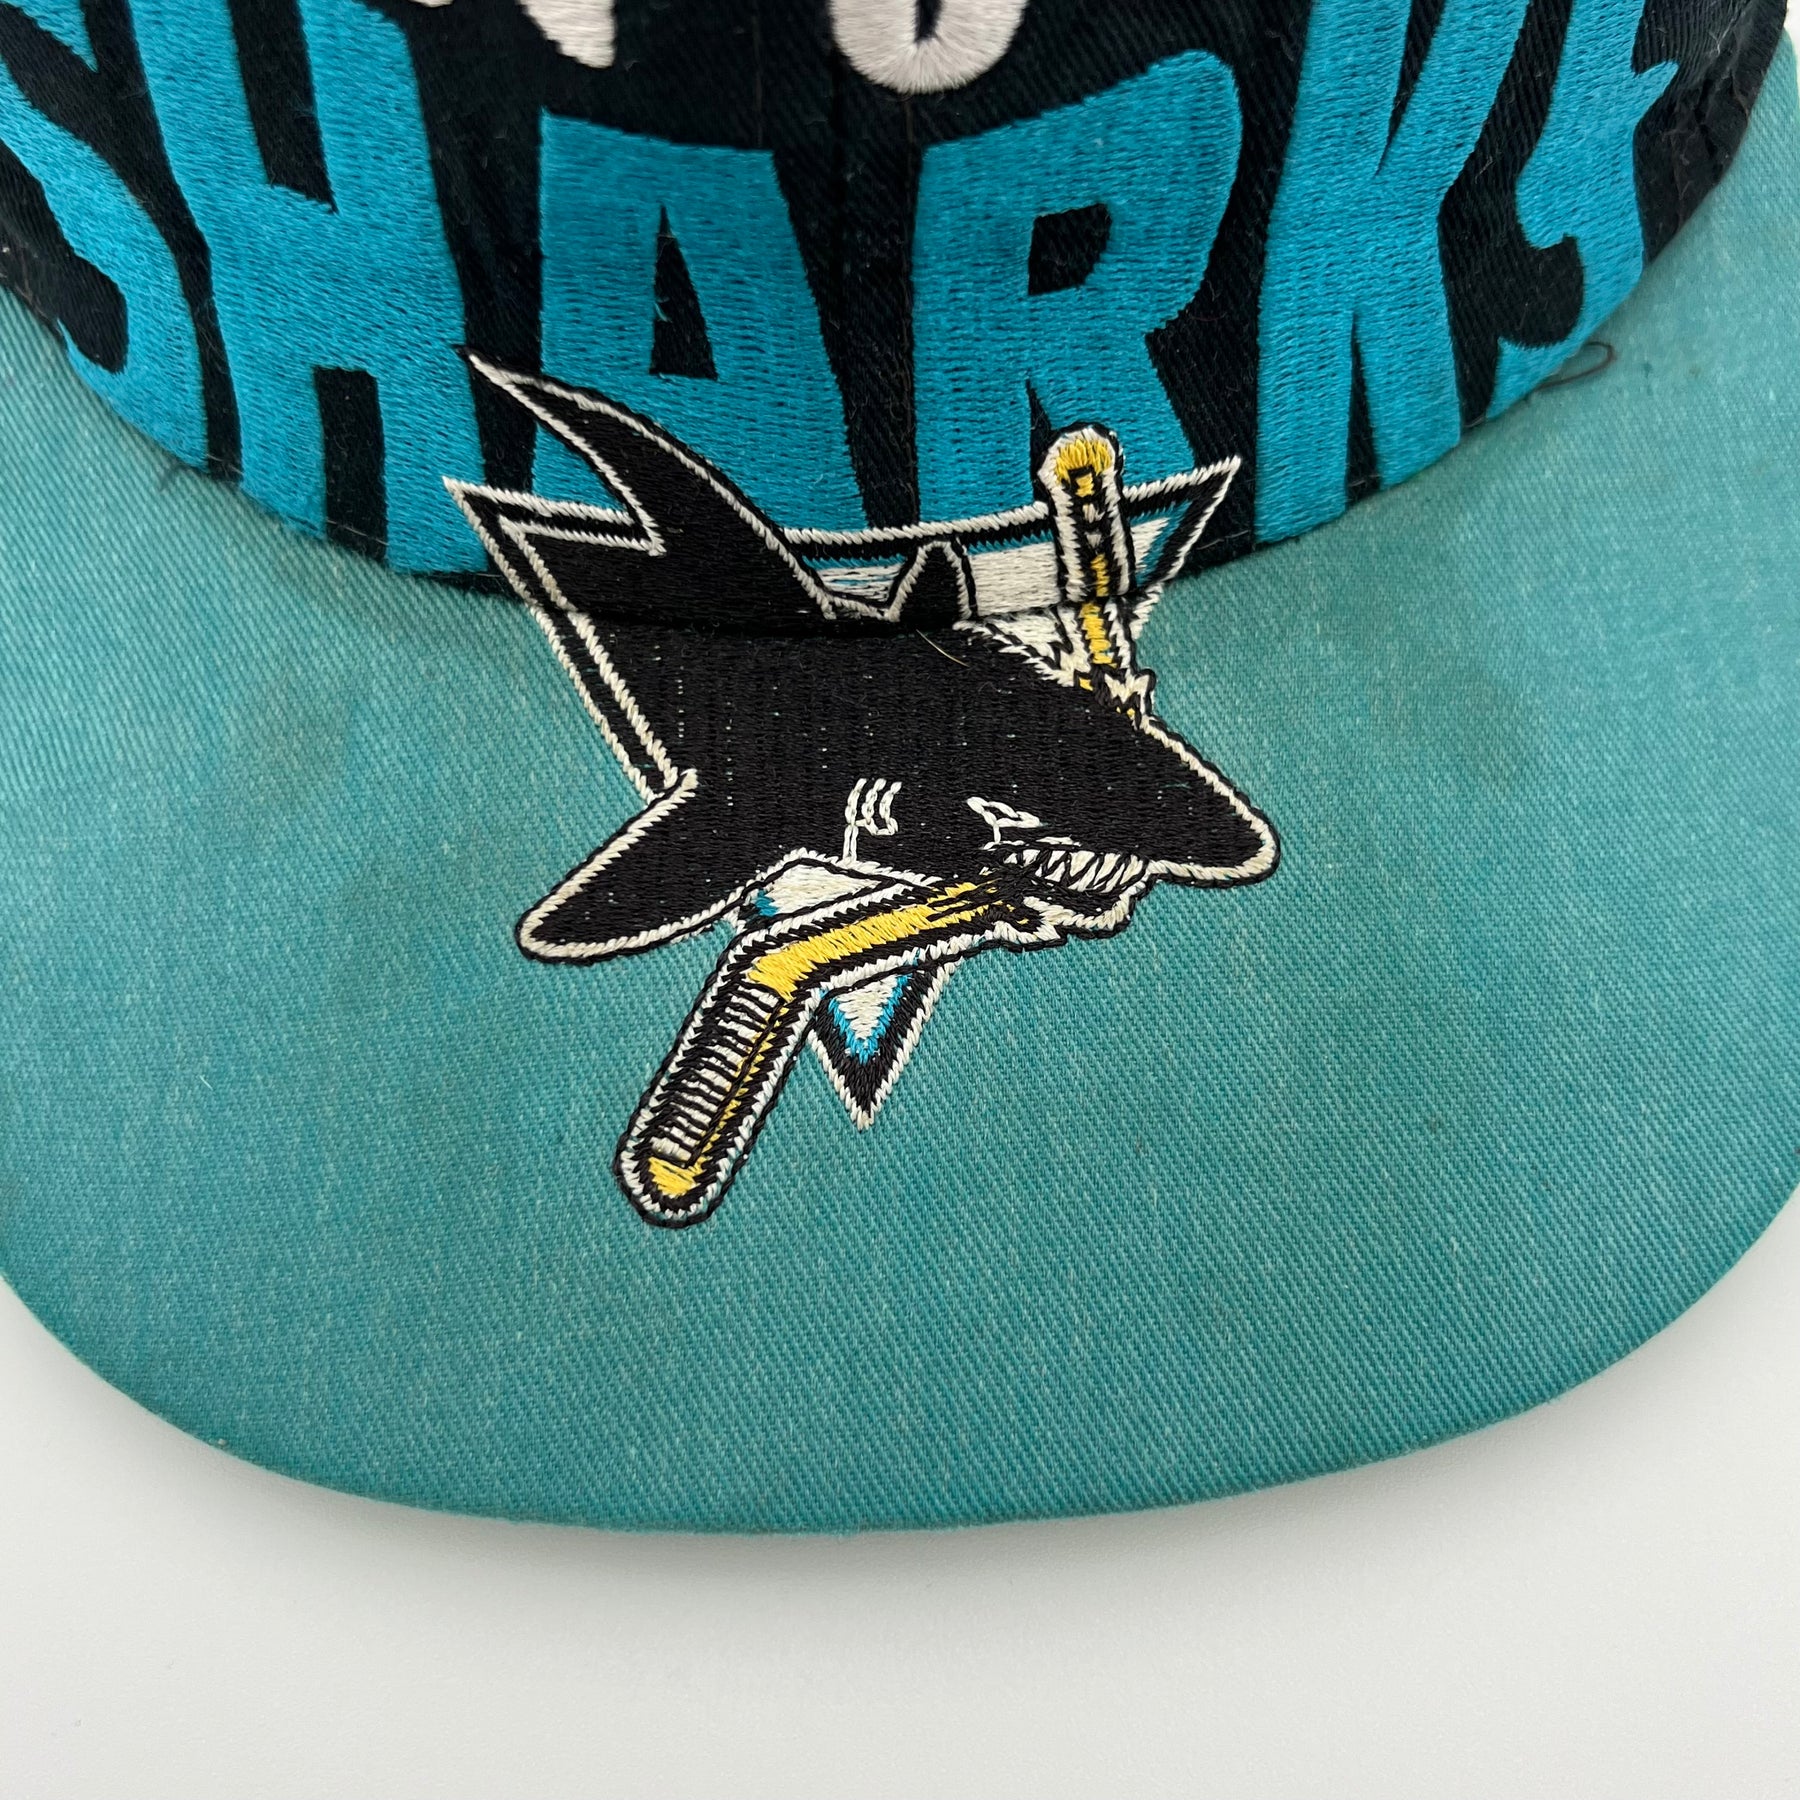 Vintage NHL San Jose Sharks Snap-Back Hat - Adult OSFA